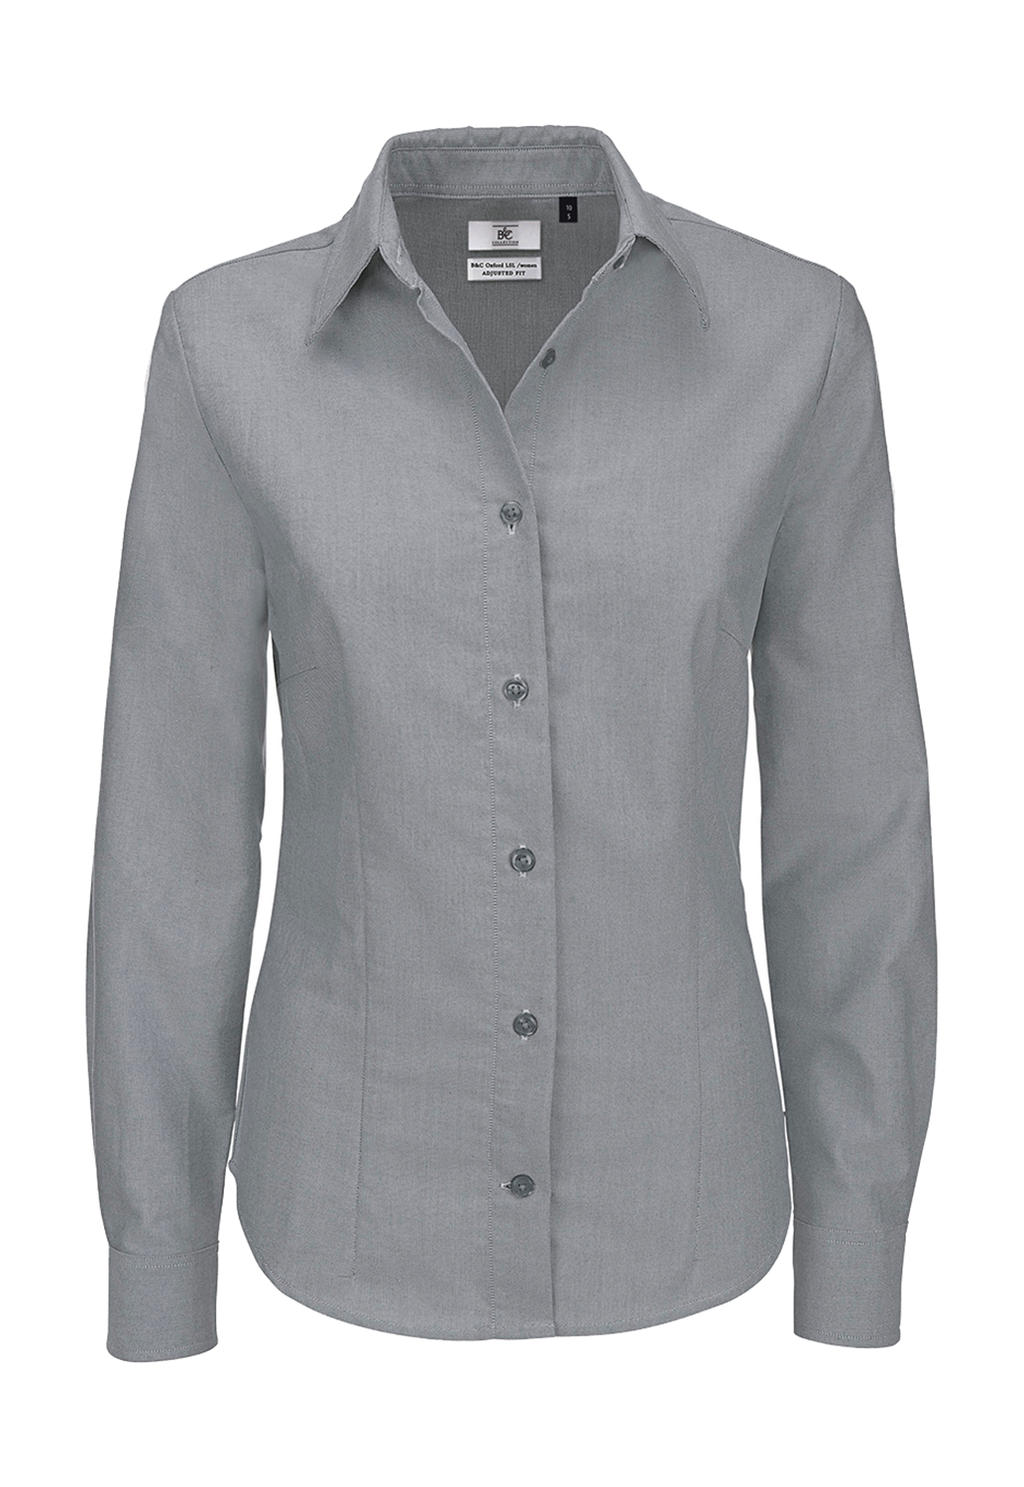 B&C Damen Business Oberteil Bluse T-Shirt Longsleeve Shirt langarm